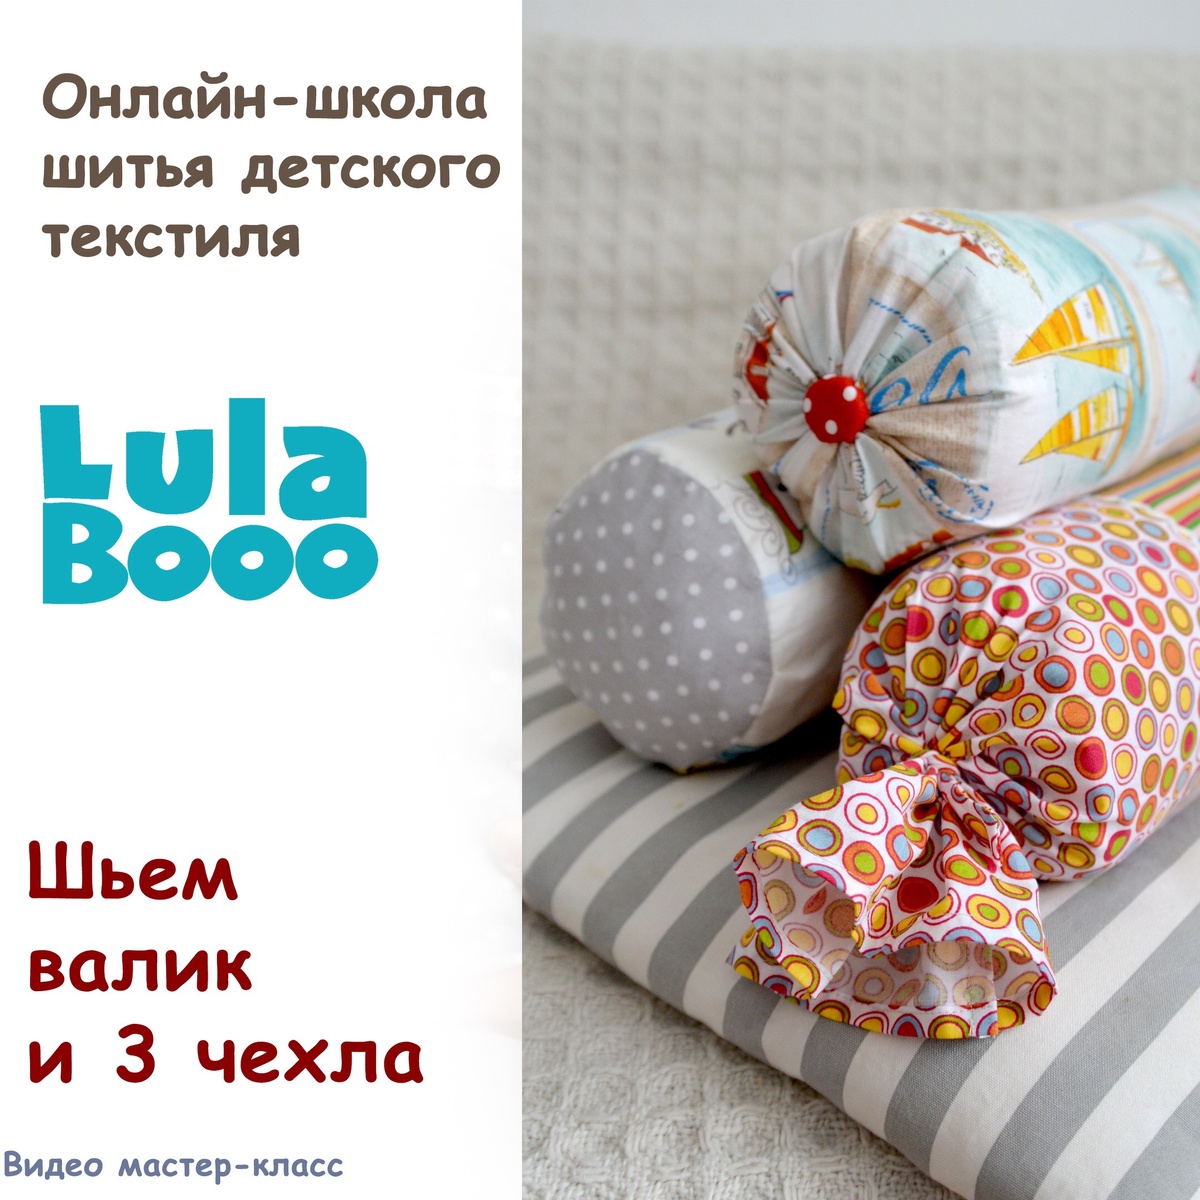 Комплекты в кроватку | «LAPPETTI» - Всё для новорожденных и малышей